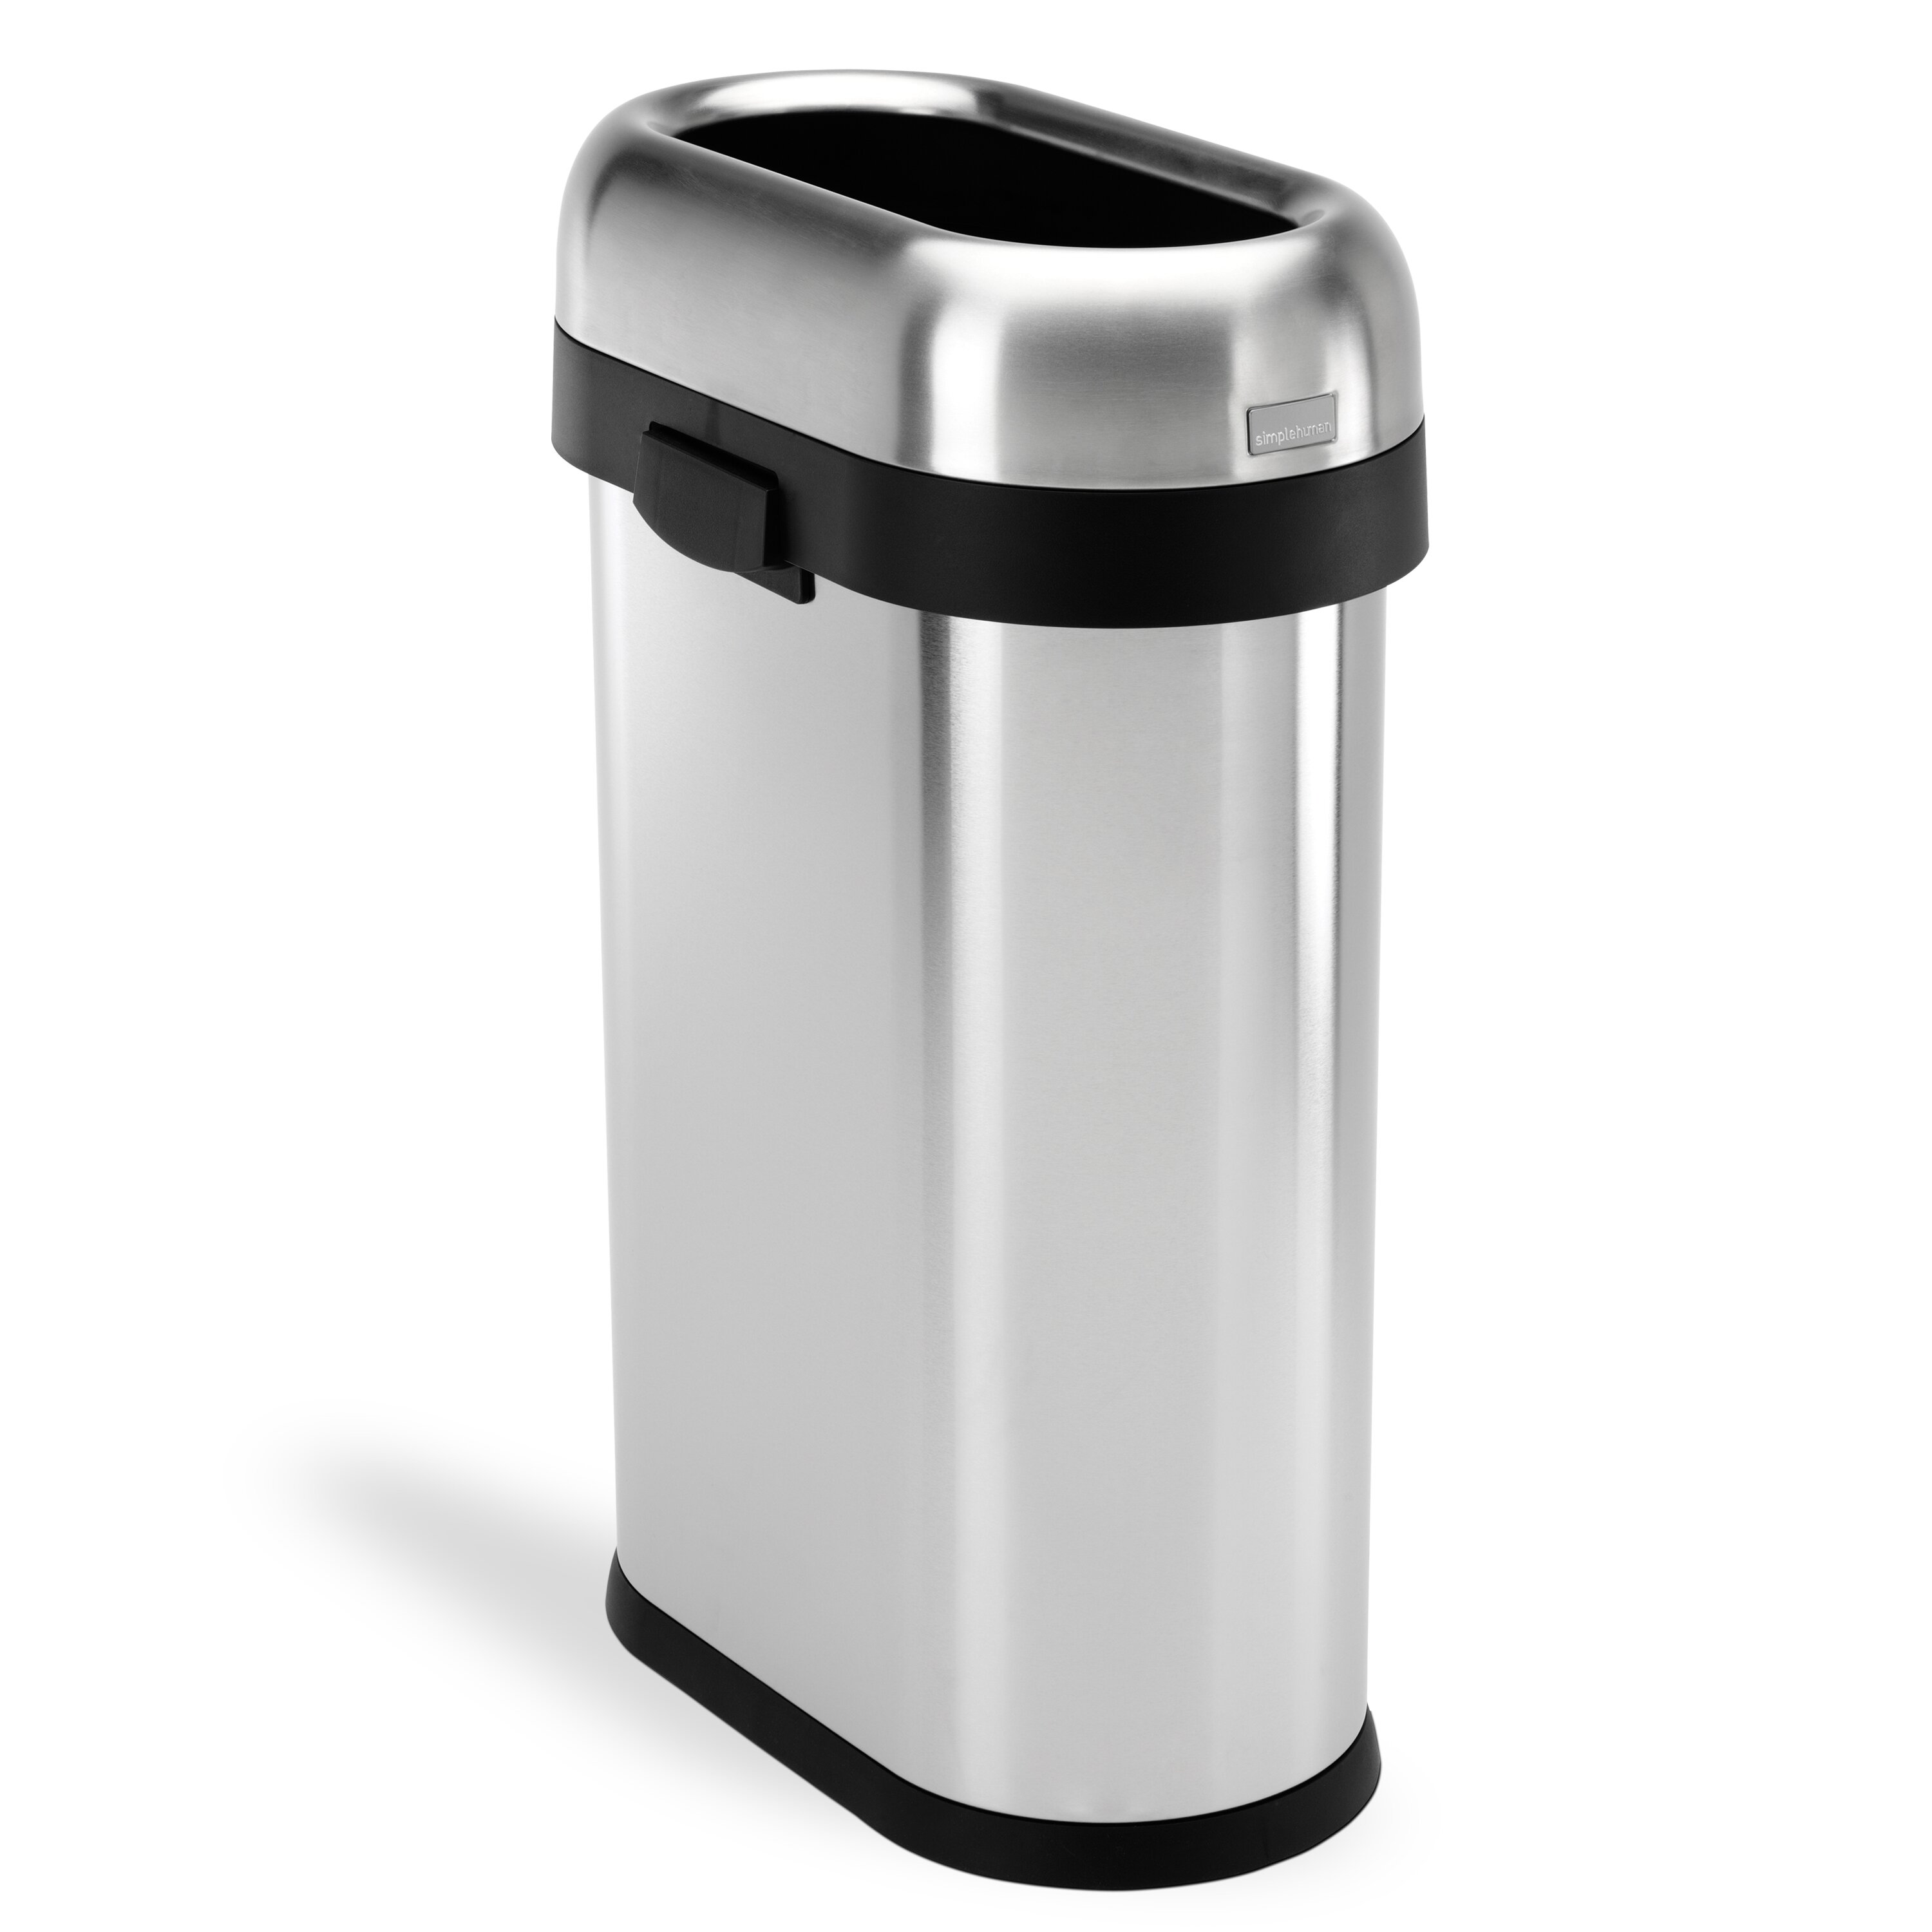 simplehuman 45-Liter Slim Trash Can + Reviews | Crate & Barrel